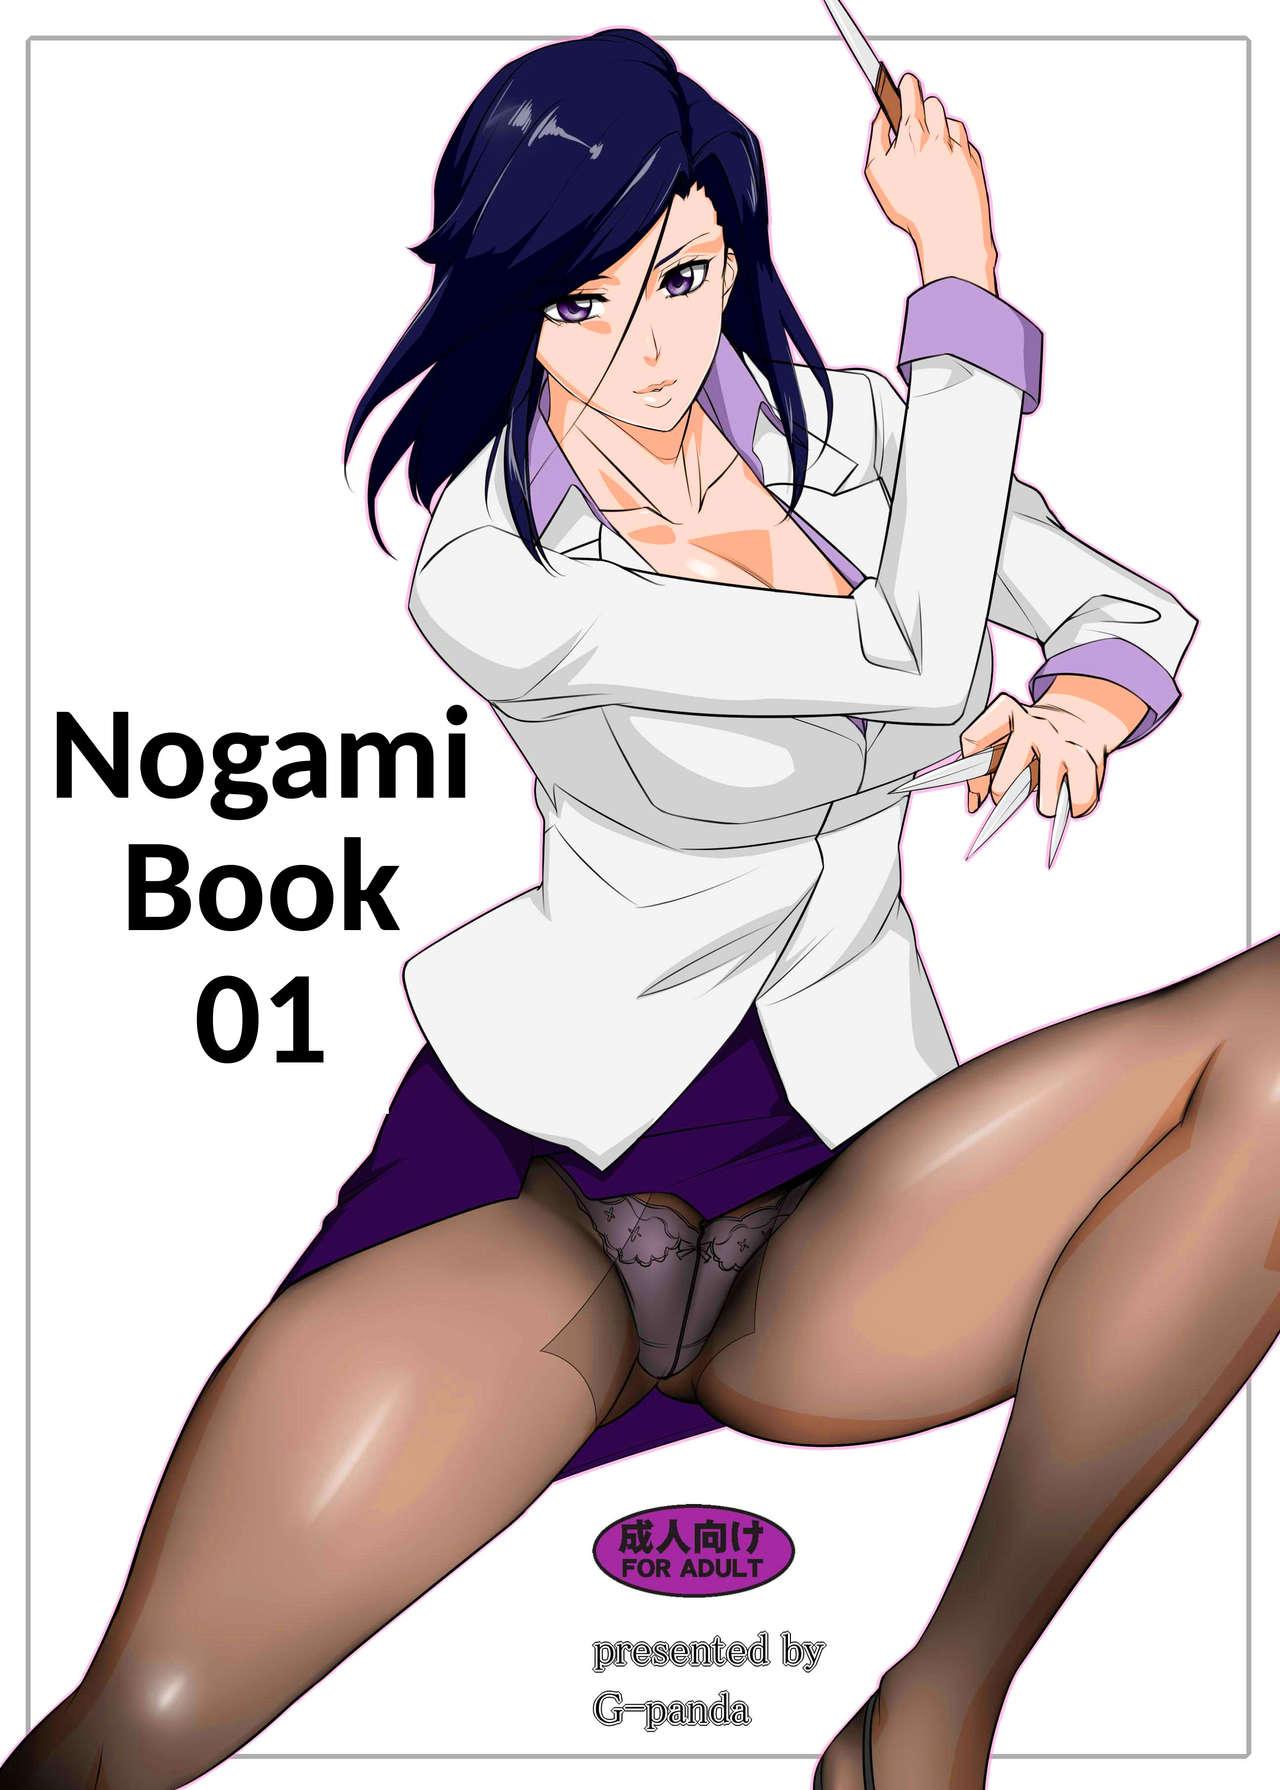 Nogami Bon 01 - Nogami Book 01 0